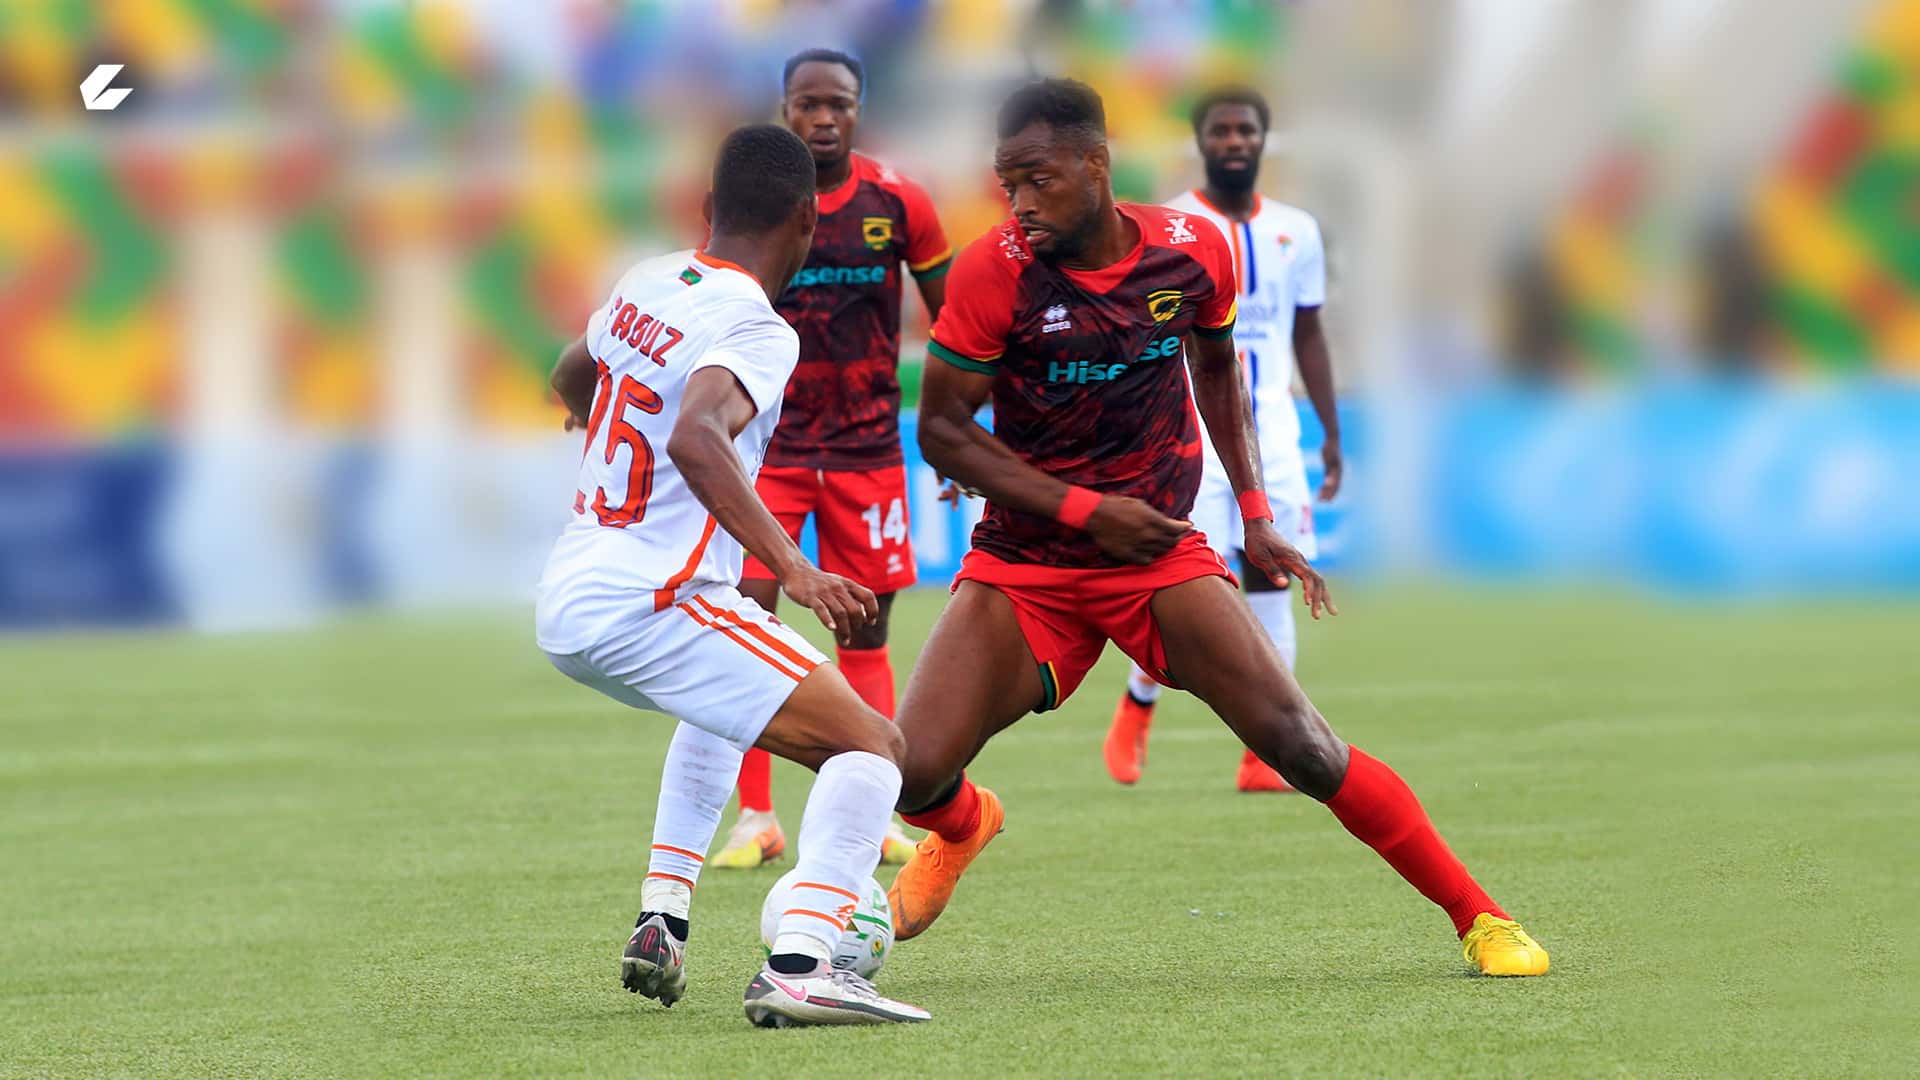 Asante Kotoko vs FC Nouadhibou